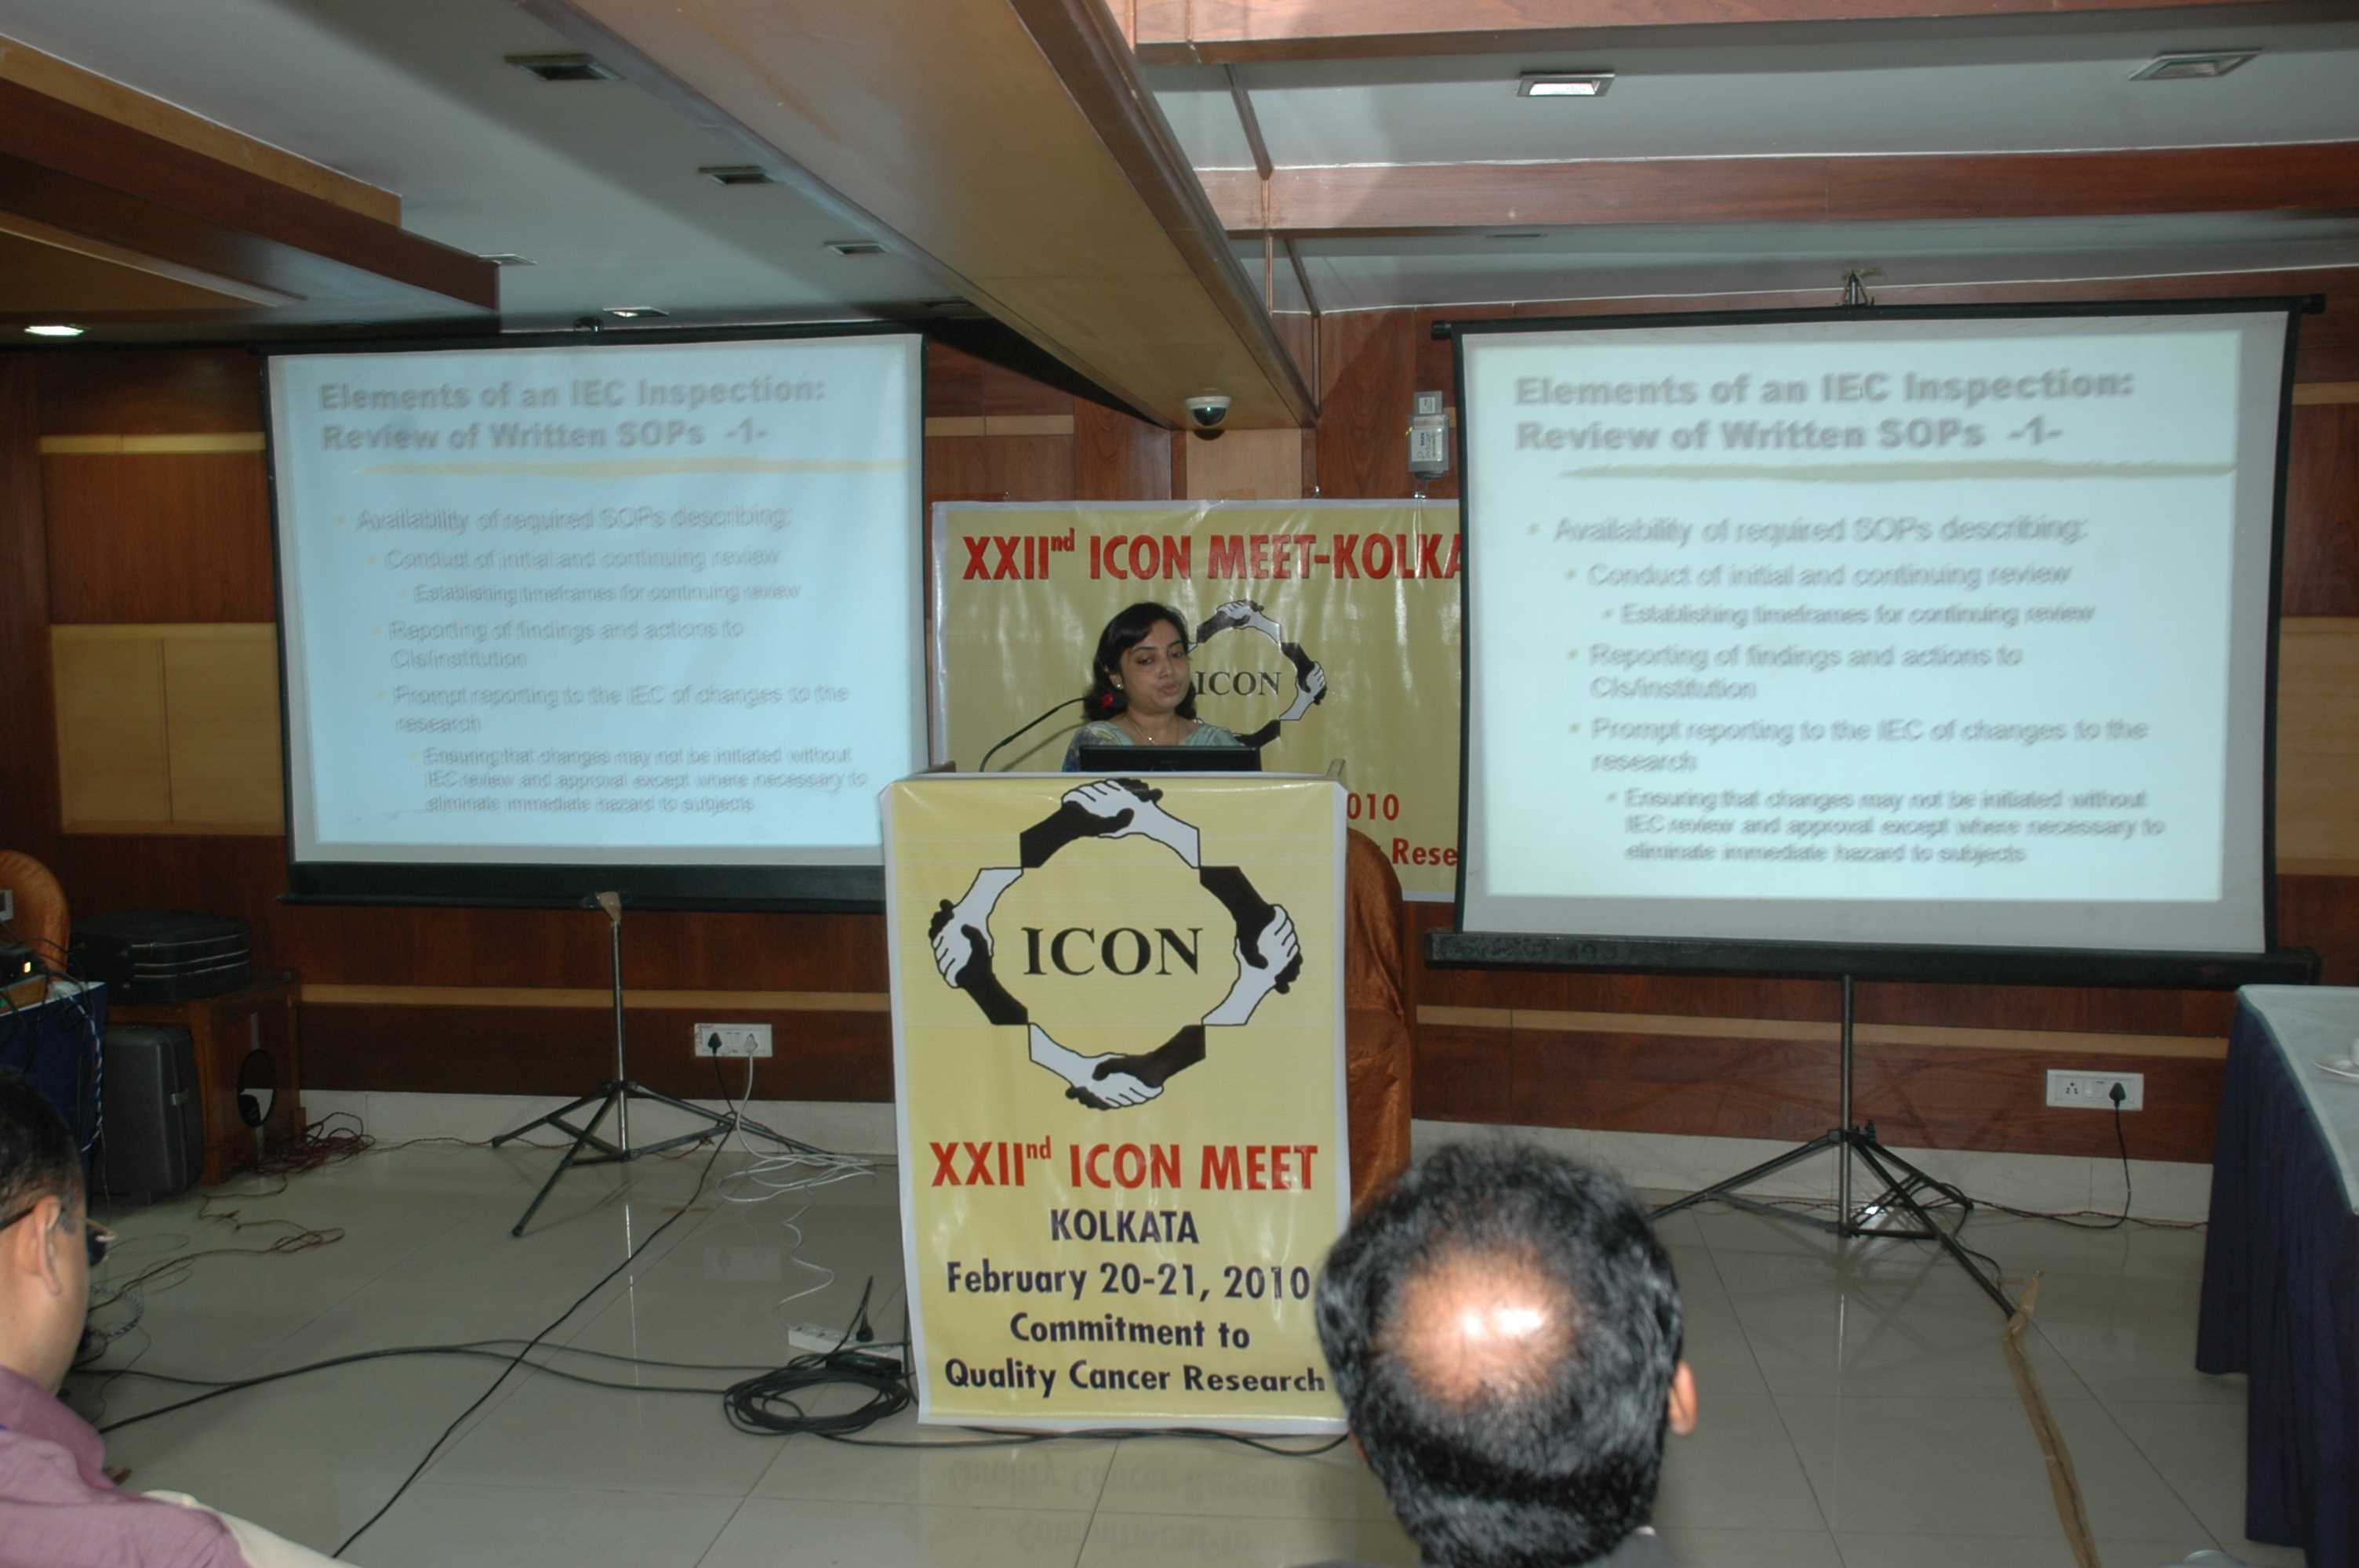 22nd ICON Meet Kolkata